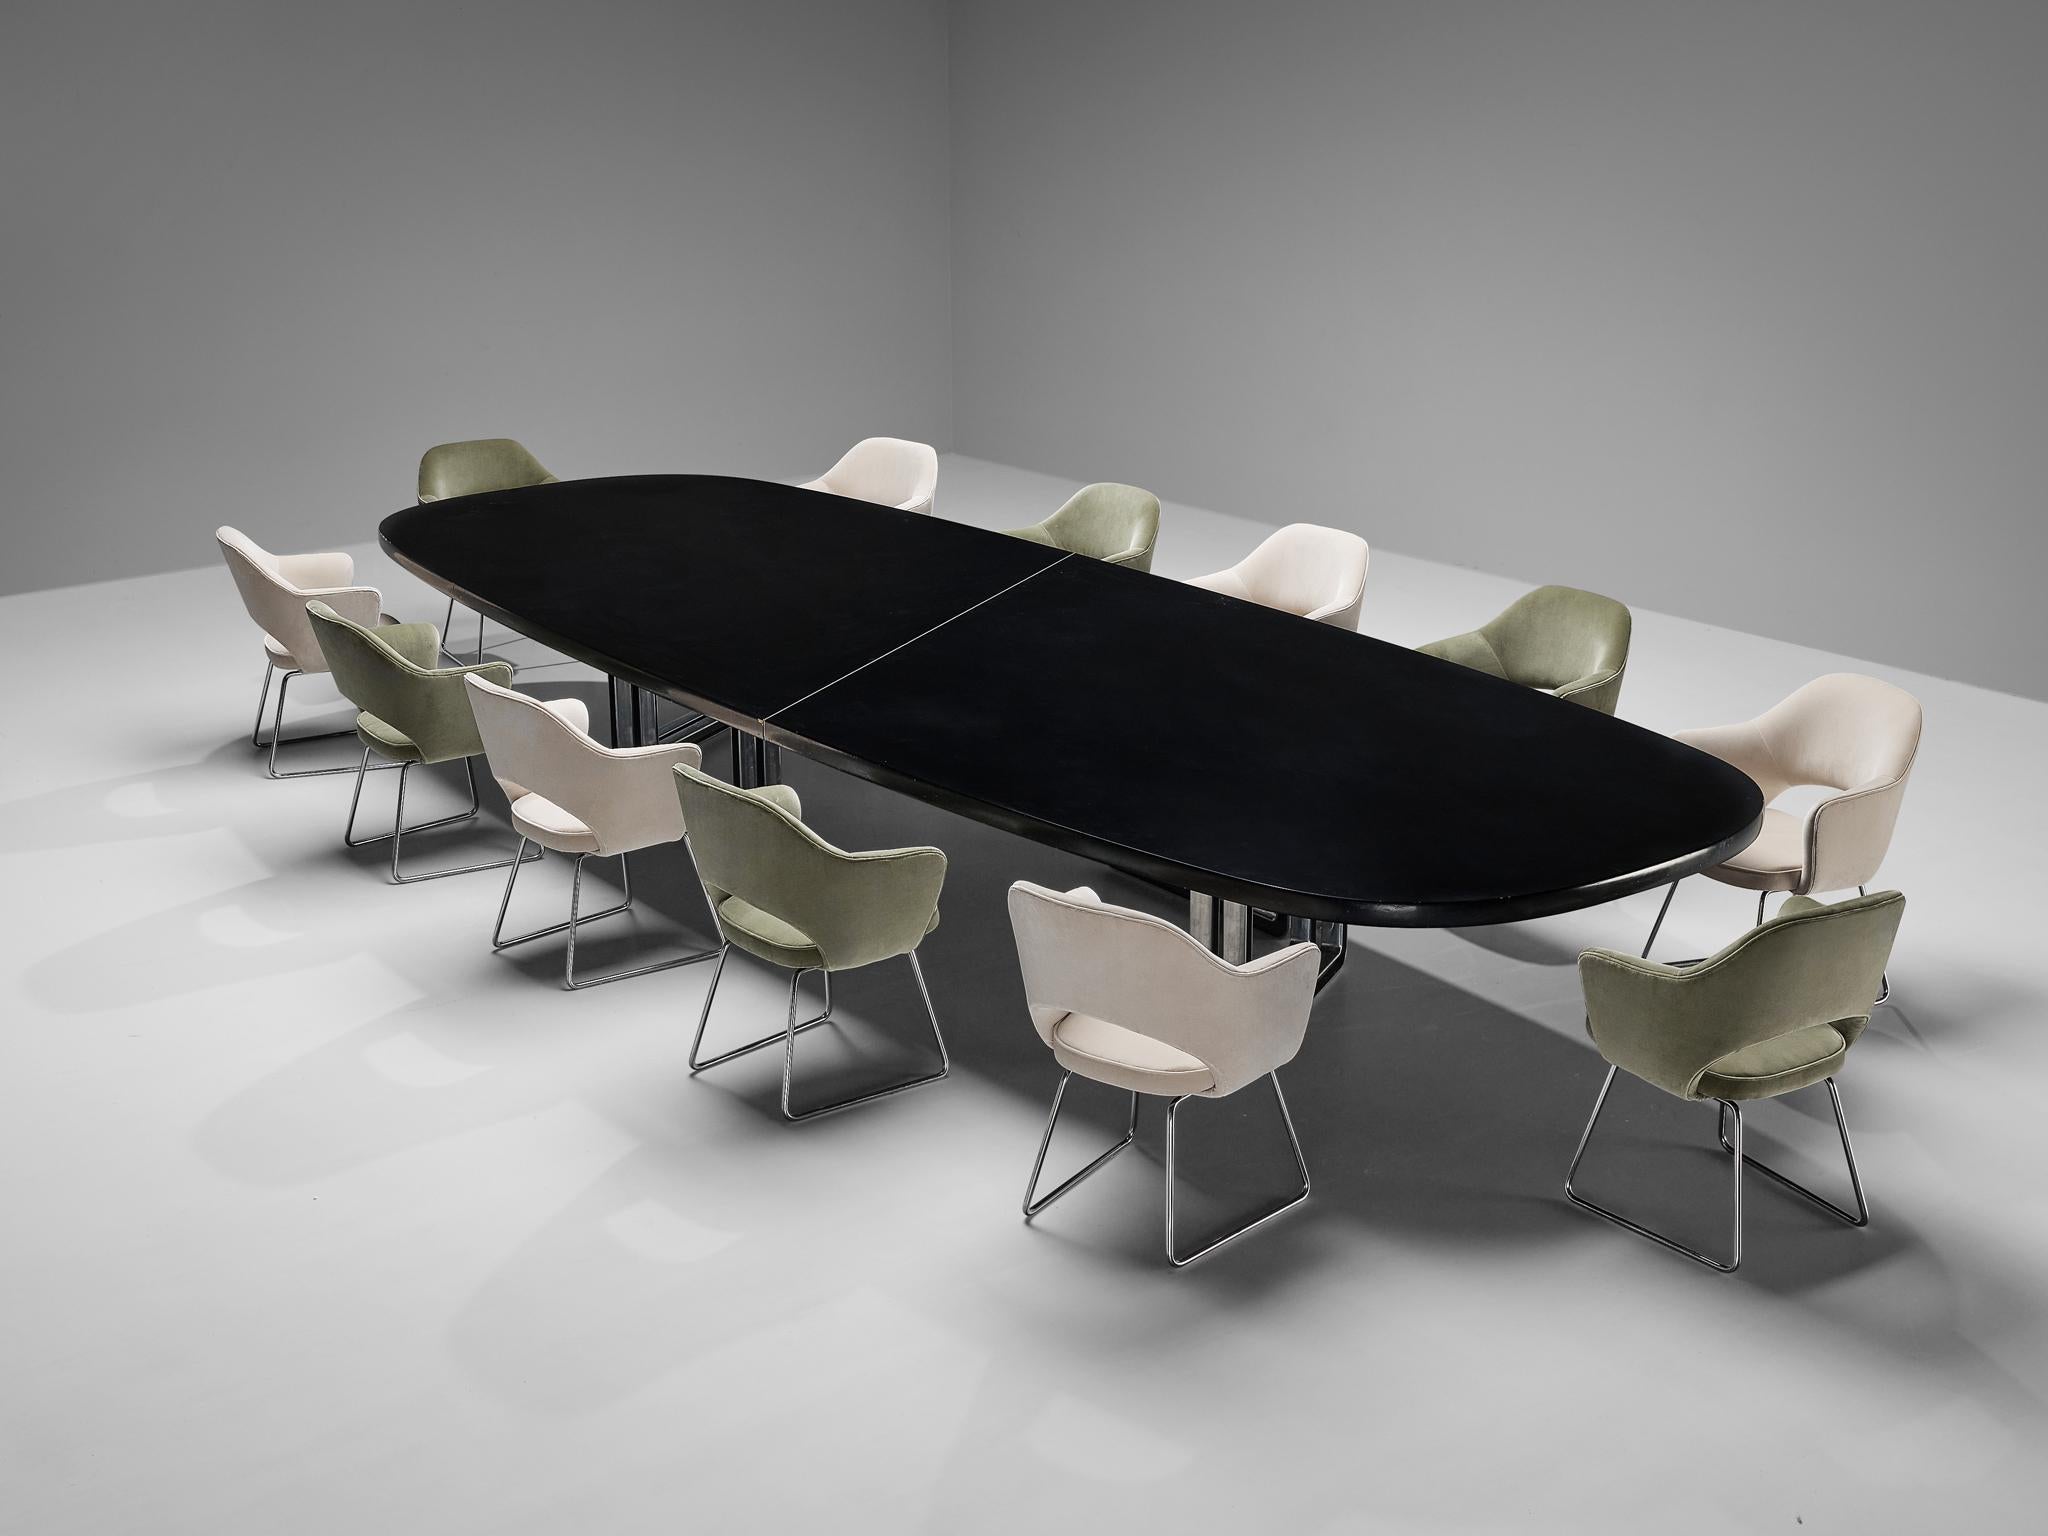 Centro Progetti Tecno, Ess- oder Konferenztisch Modell 'T335', lackiertes Holz, Aluminium, Italien, 1975-1978

Großer Ess- oder Konferenztisch mit einer schwarz lackierten Holzplatte, die eine unglaublich weiche Textur aufweist. Der Tisch besteht